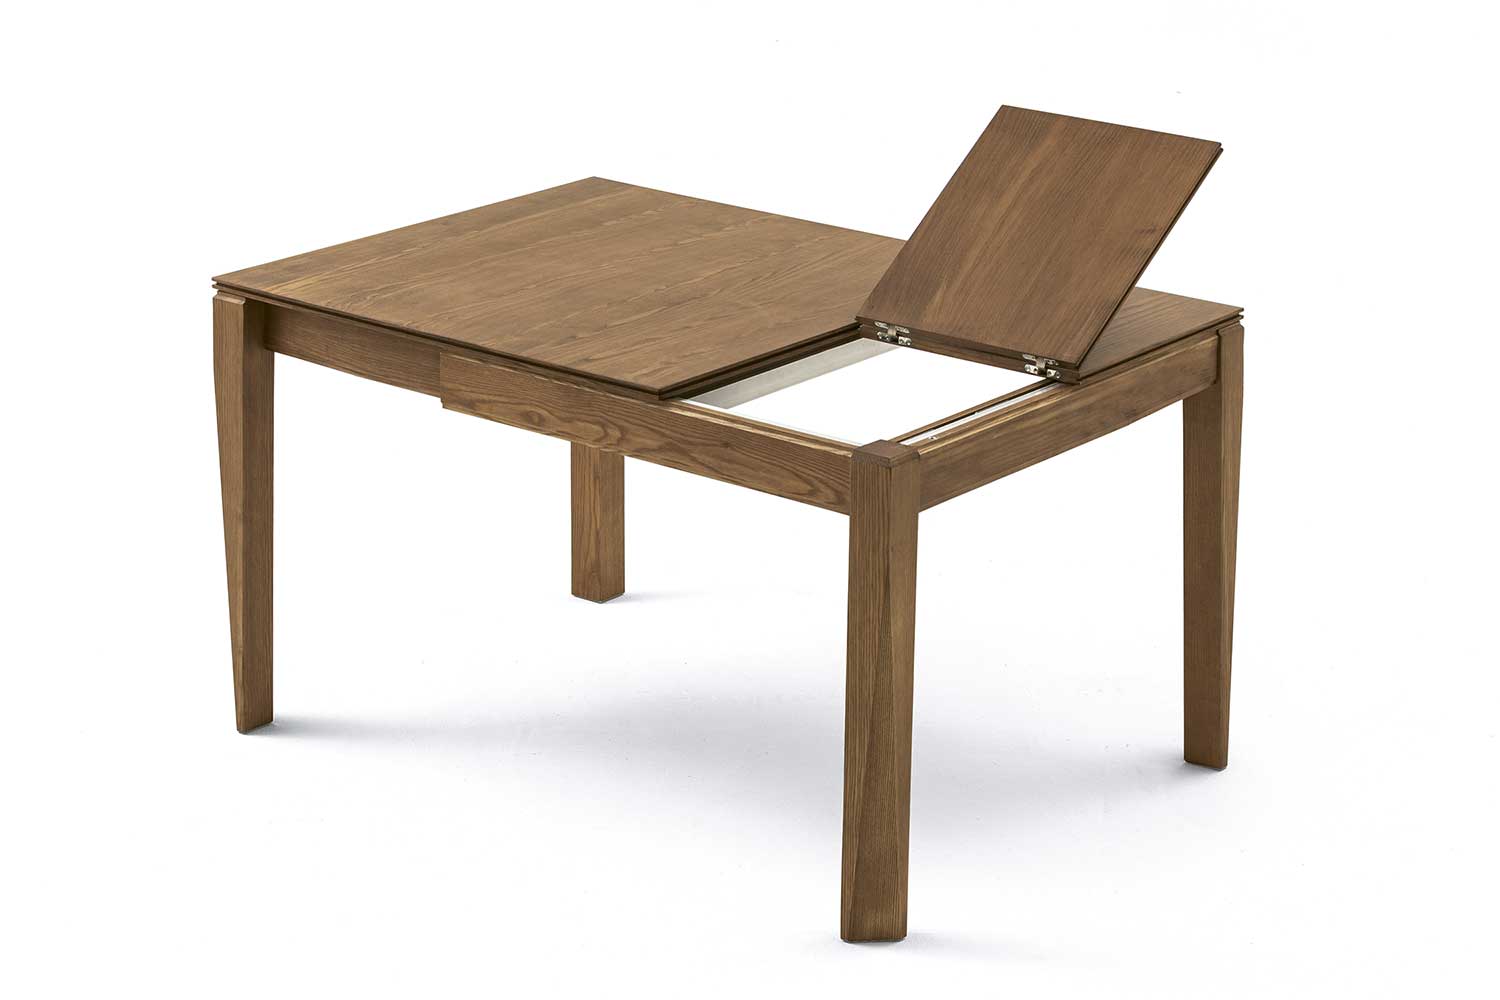 https://www.italydreamdesign.com/wp-content/uploads/PLURIMO-e-tavolo-quadrato-noce-table-carre-noyer-square-walnut.jpg